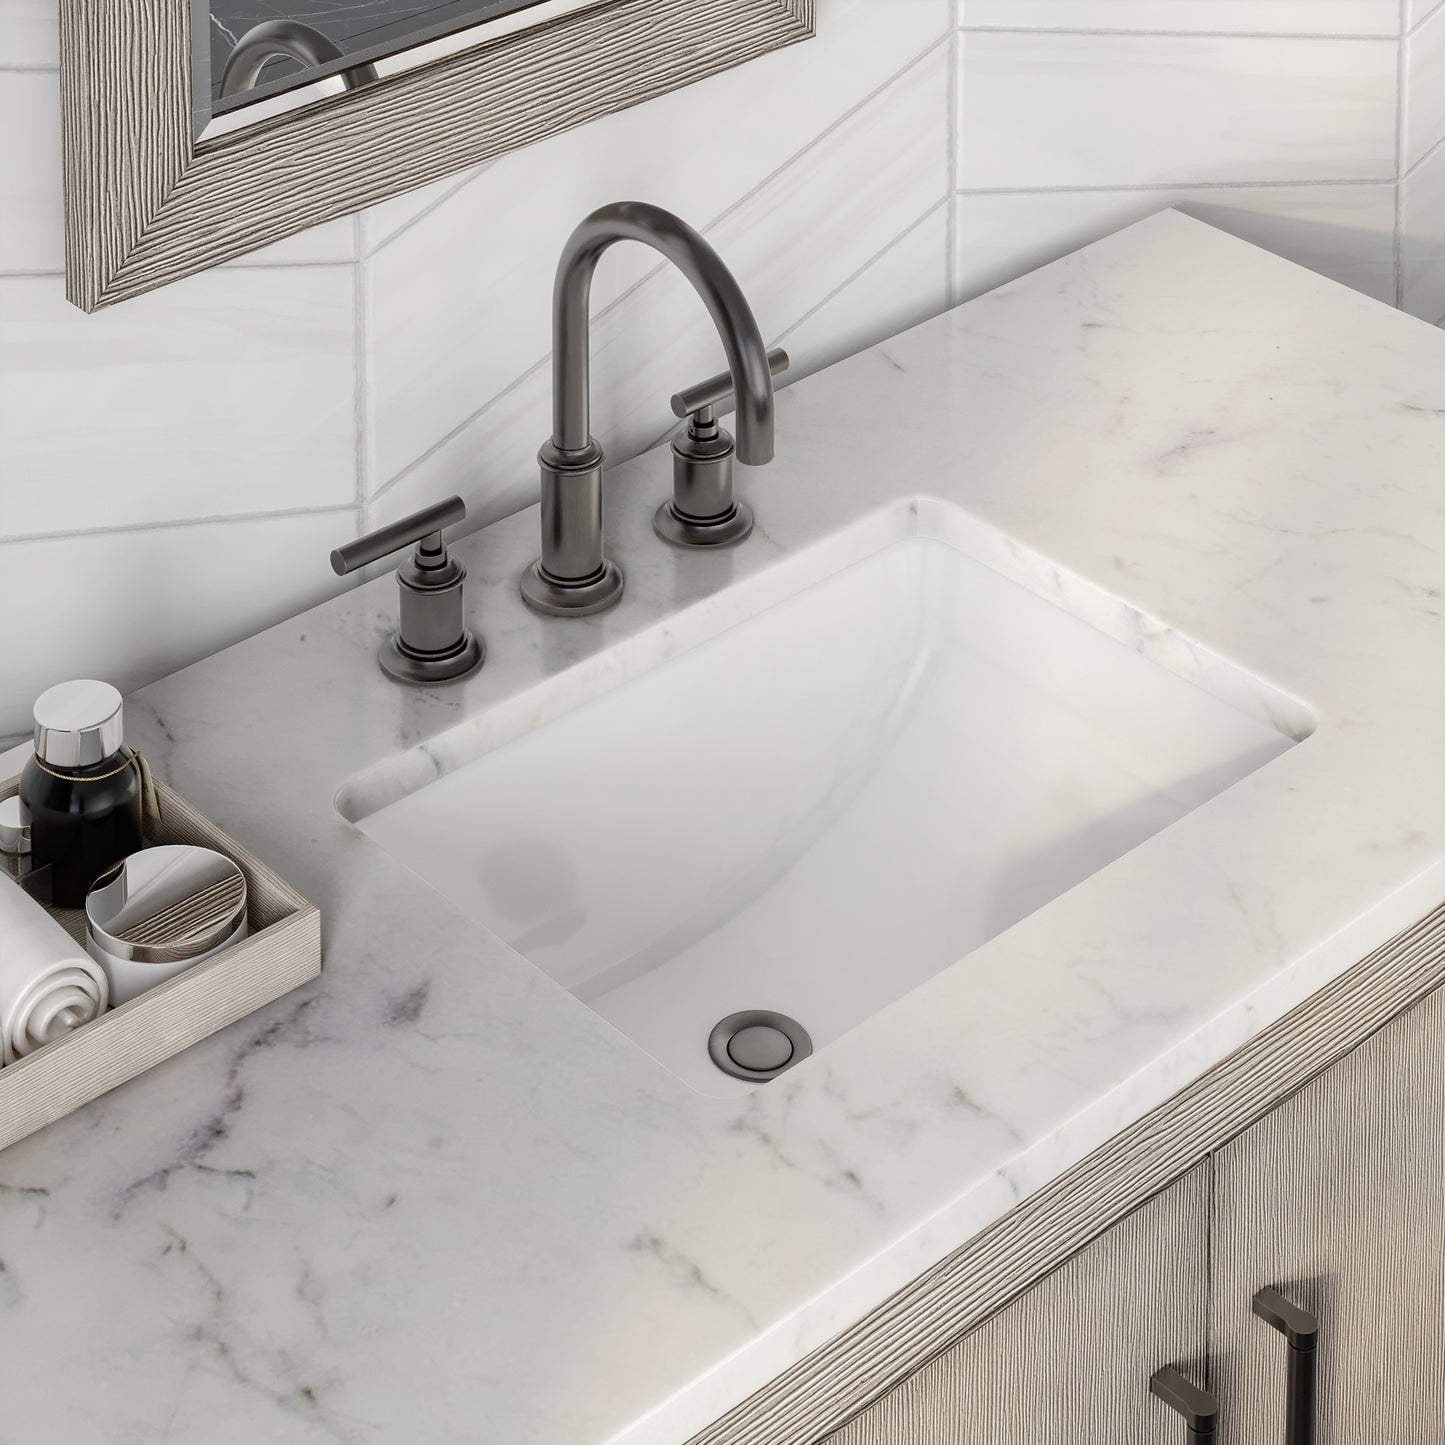 Water Creation Hugo 72" In. Double Sink Carrara White Marble Countertop Vanity in Grey Oak with Gooseneck Faucets - Luxe Bathroom Vanities